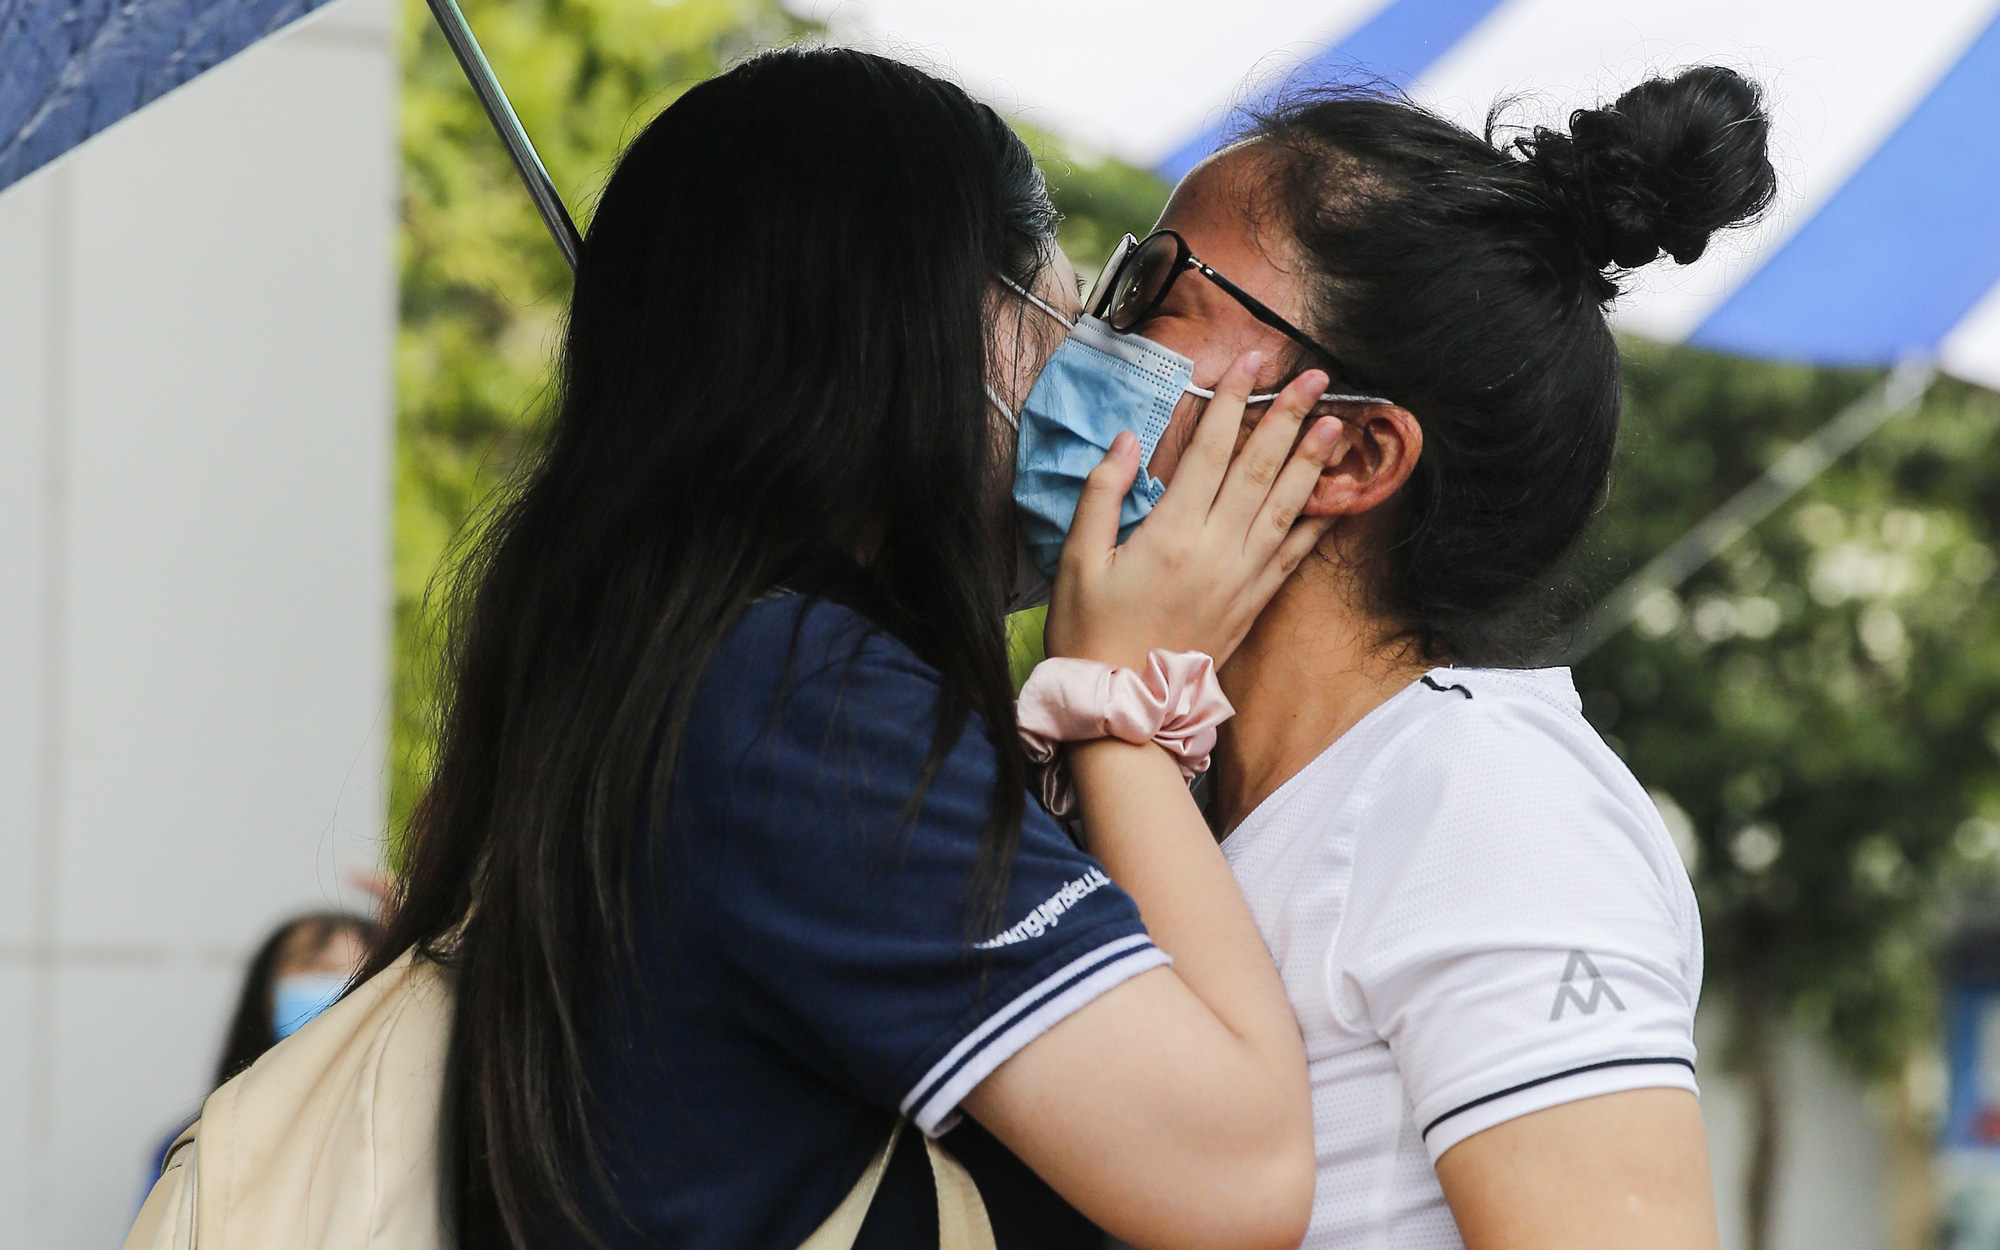 Hà Nội: Trao nhau nụ hôn dưới cơn mưa sau khi kết thúc ngày thi đầu tiên vào lớp 10